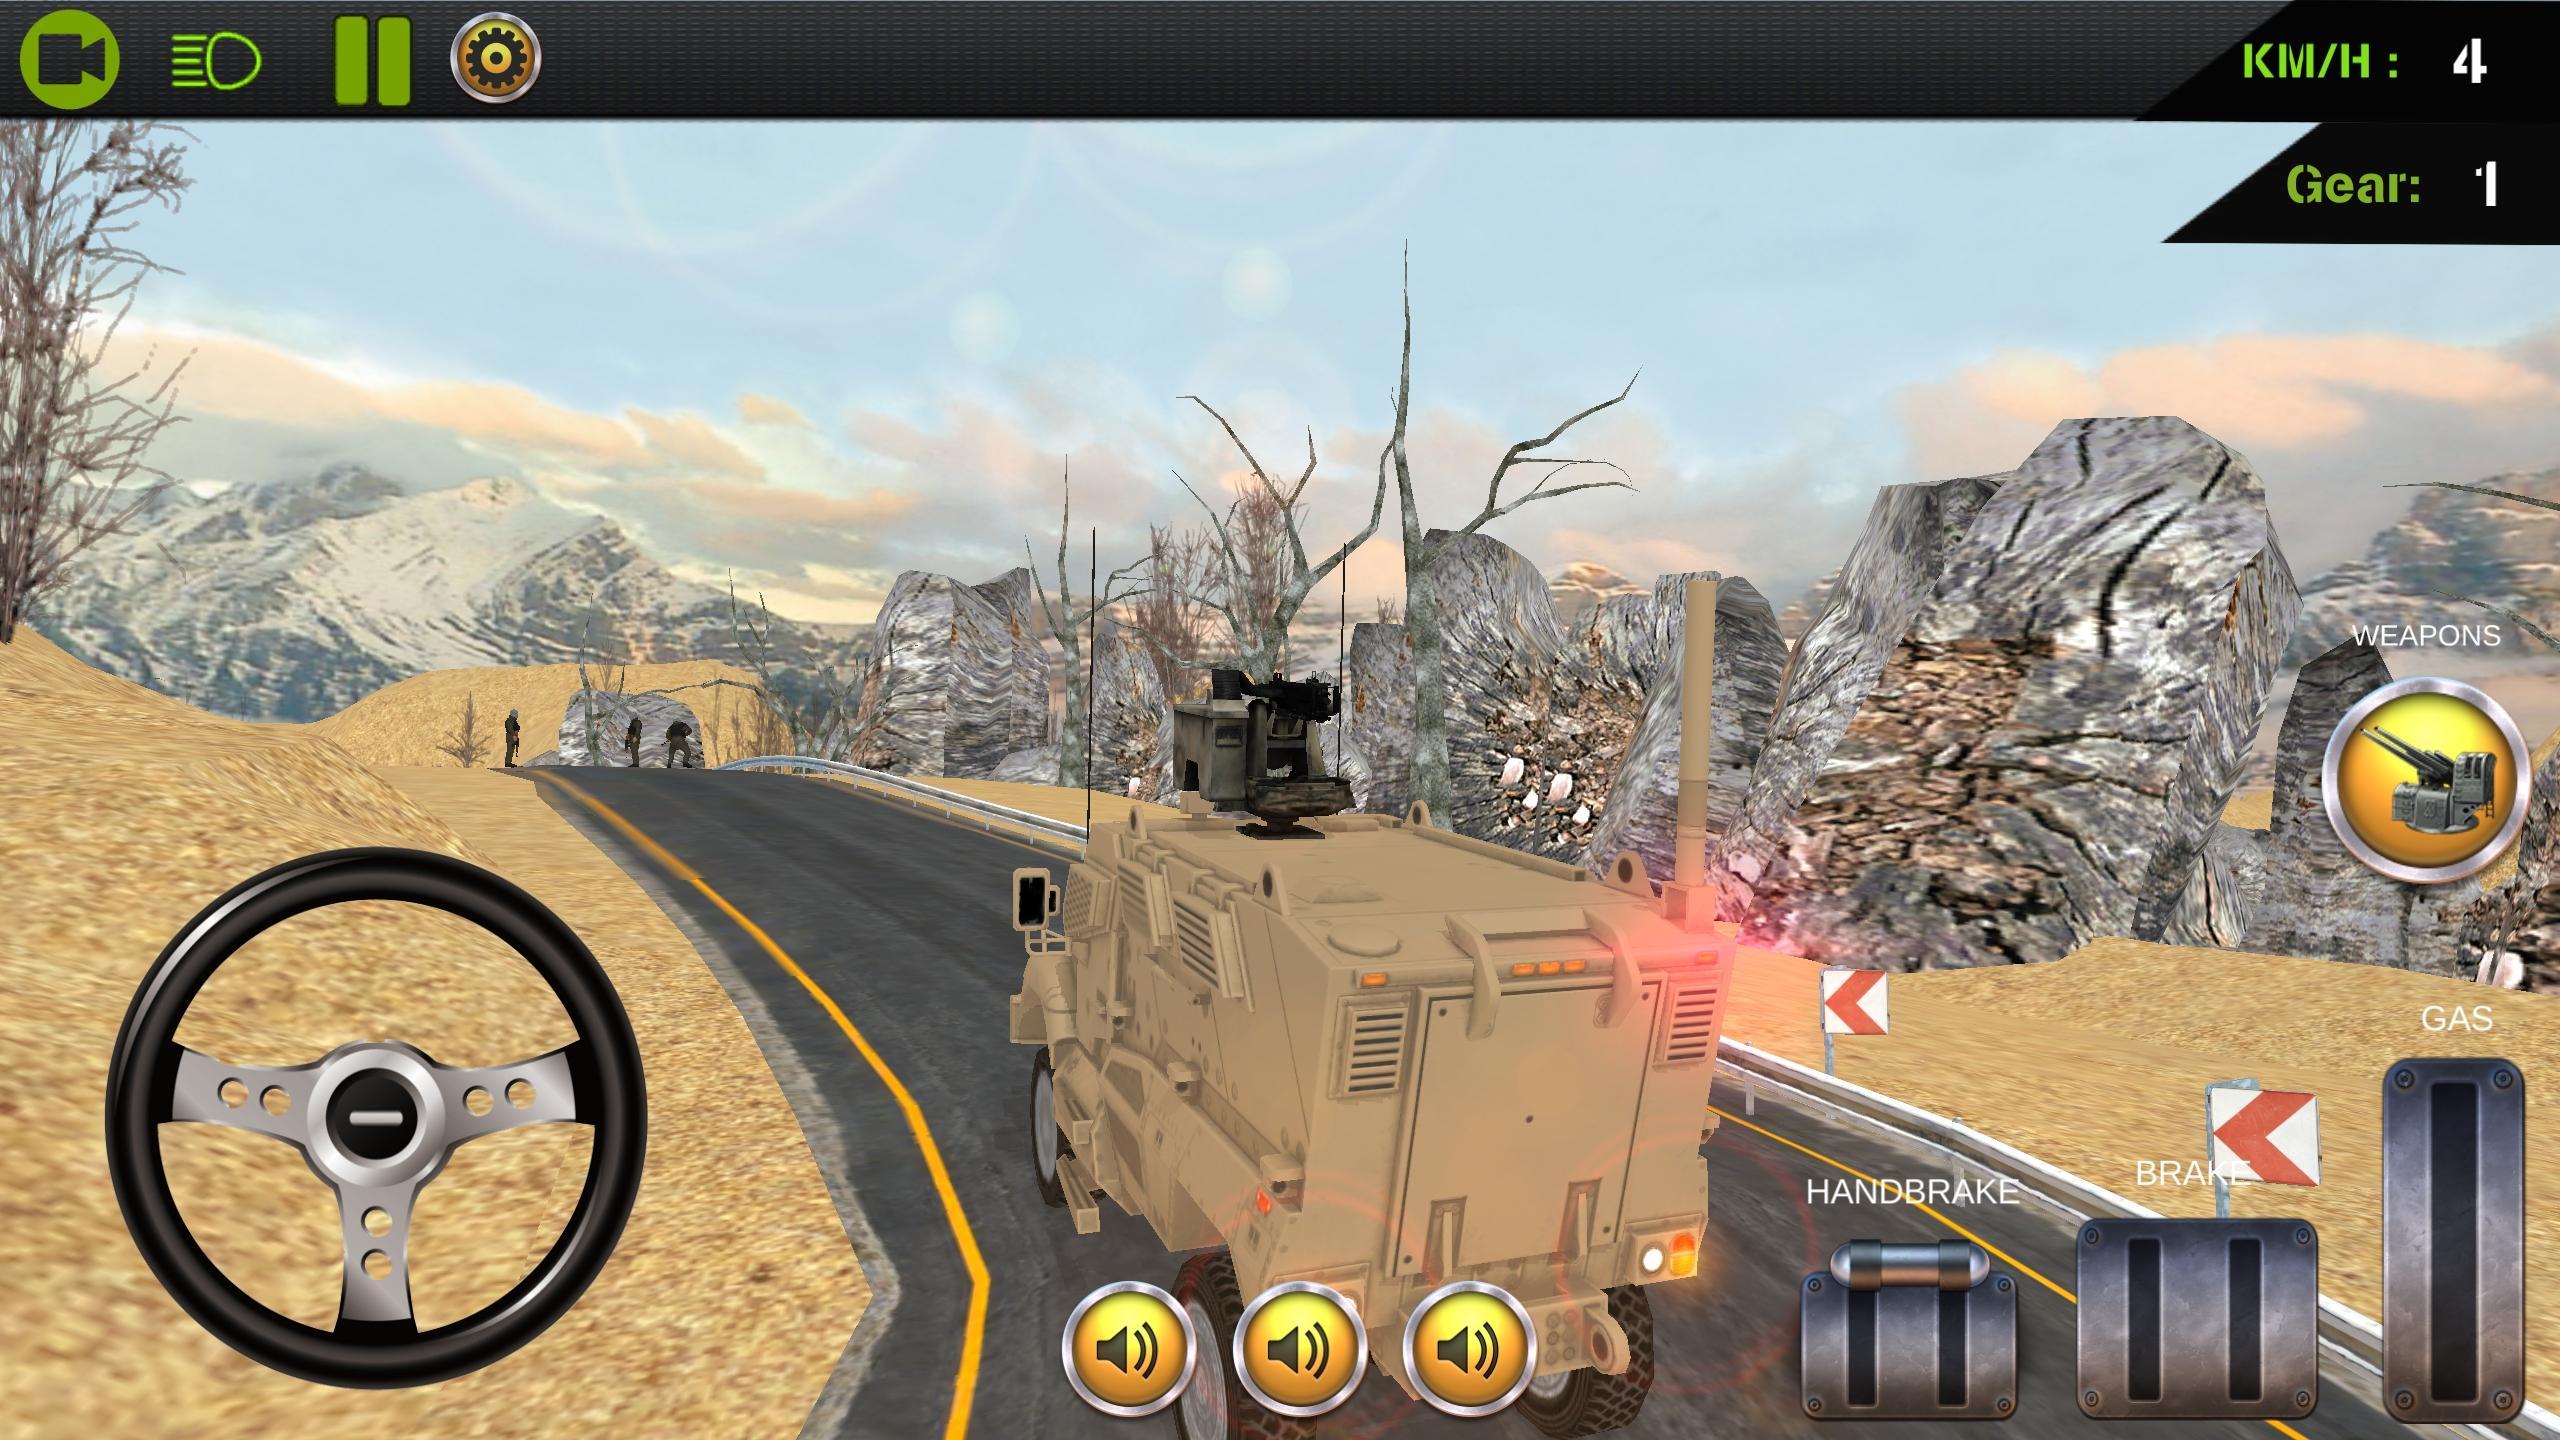 Игра военная операция. Armed Forces игра. Военный симулятор на андроид. Soldier Force игра. Игры про военные операции.